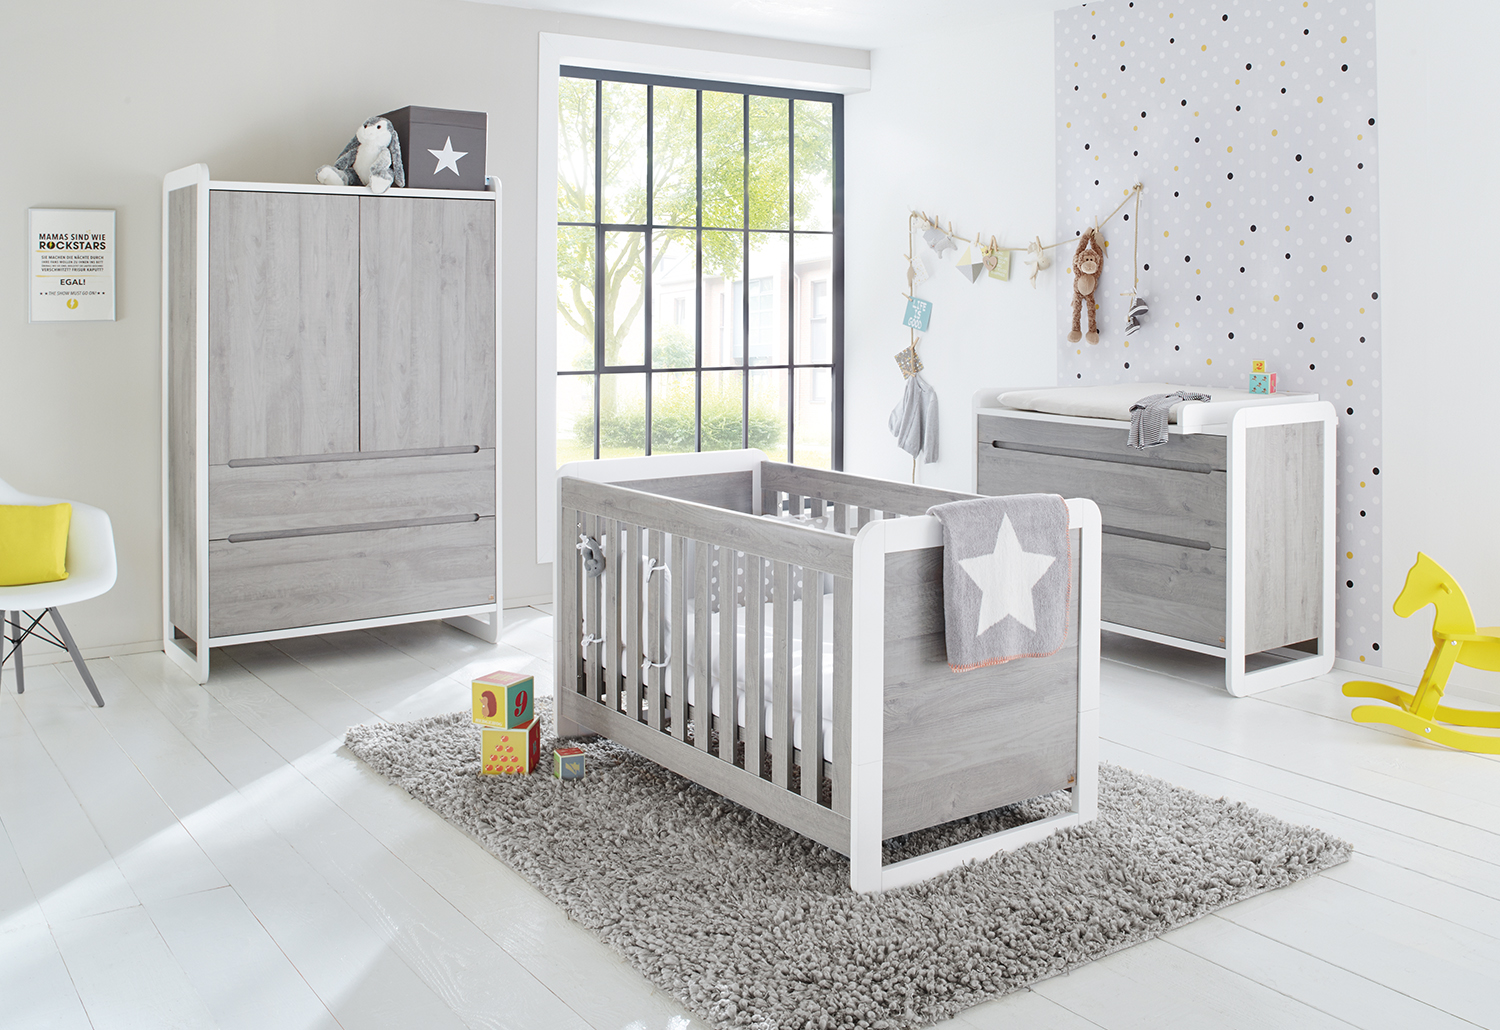 Comment meubler une chambre de bébé ?